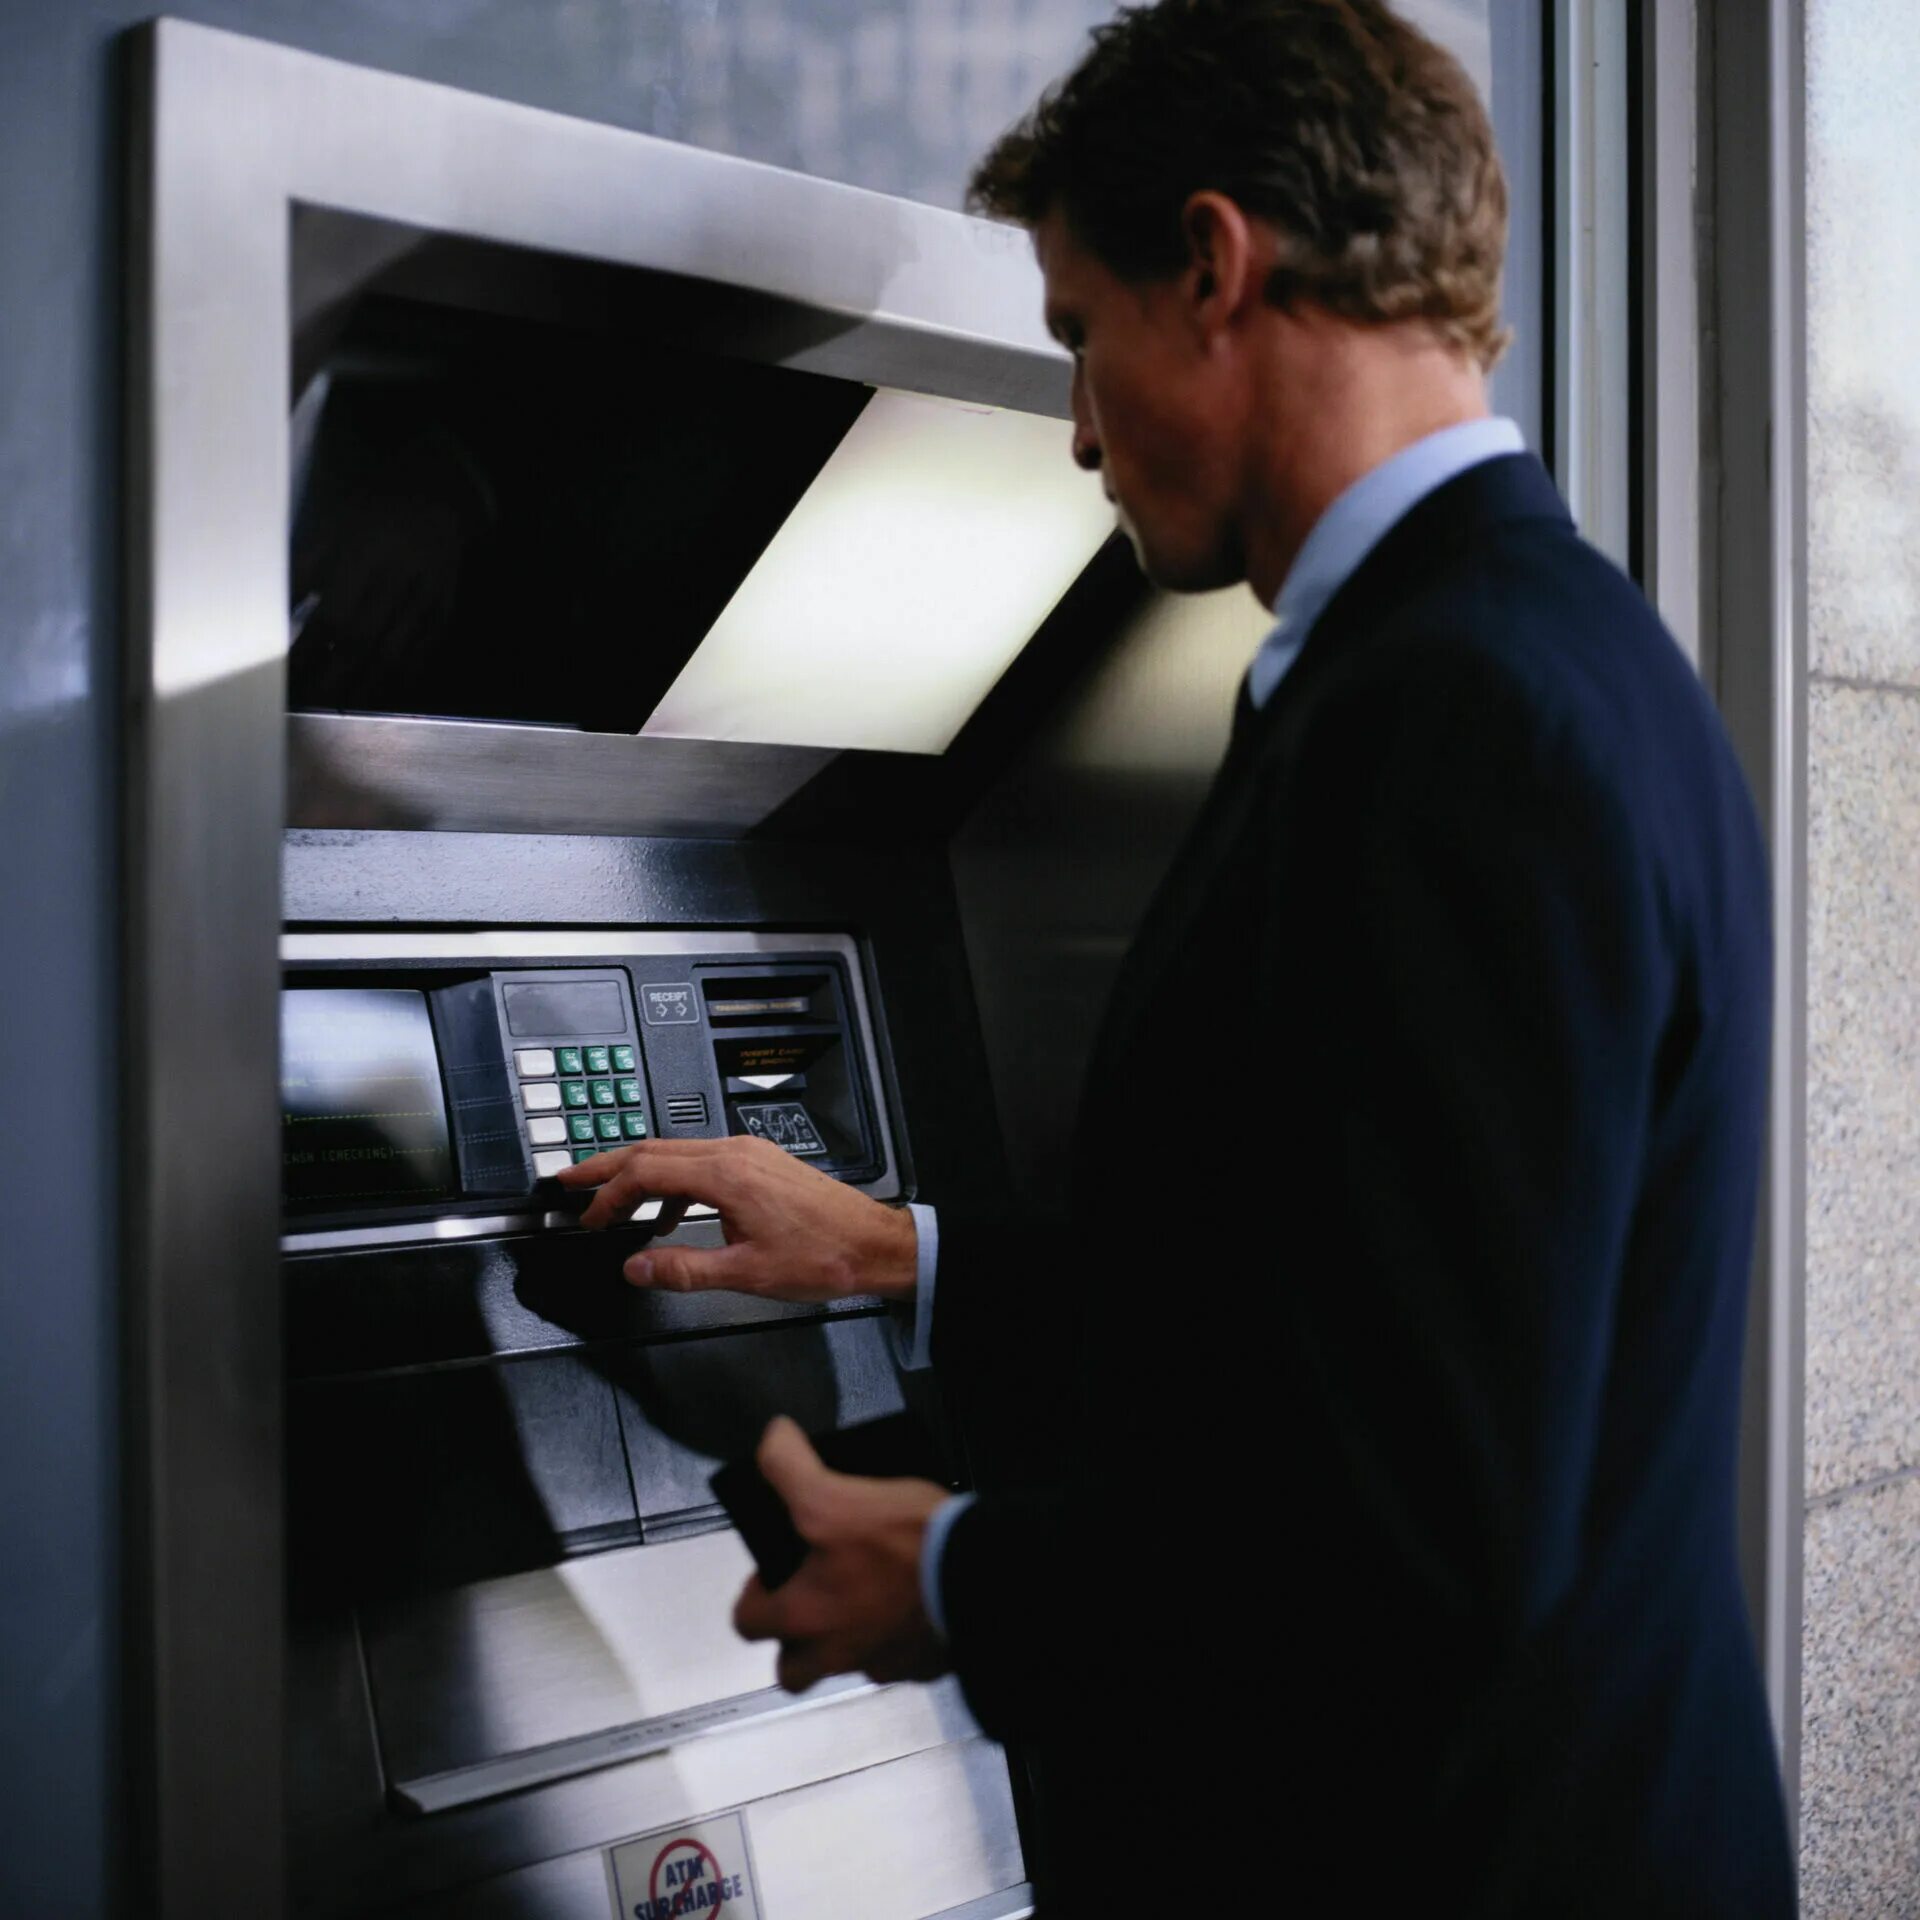 Для каких операций используют банкомат чаще всего. Человек у банкомата. Компьютер в банковских операциях. Банкоматы банков. Деньги в банкомате.